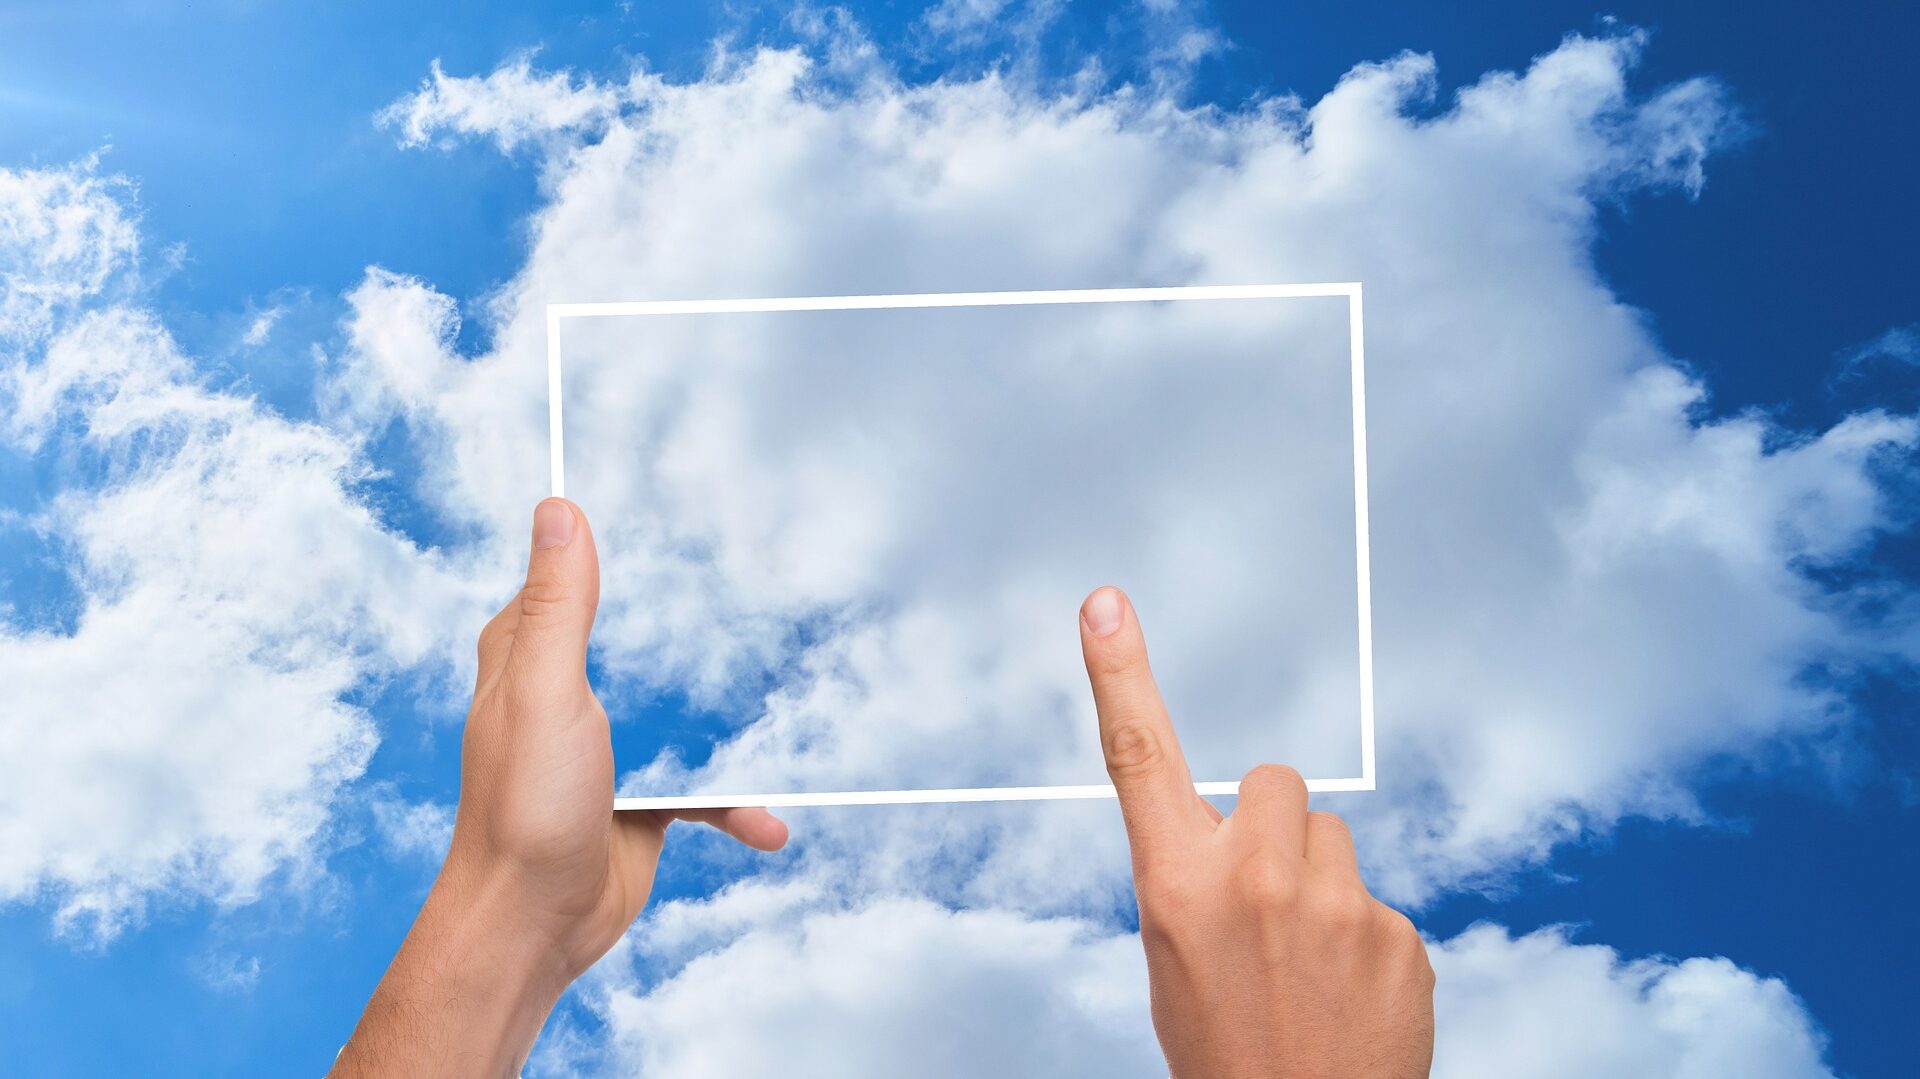 transparentes Tablet vor einer Wolke am blauen Himmel, gehalten von einer Hand, ein Finger tippt darauf